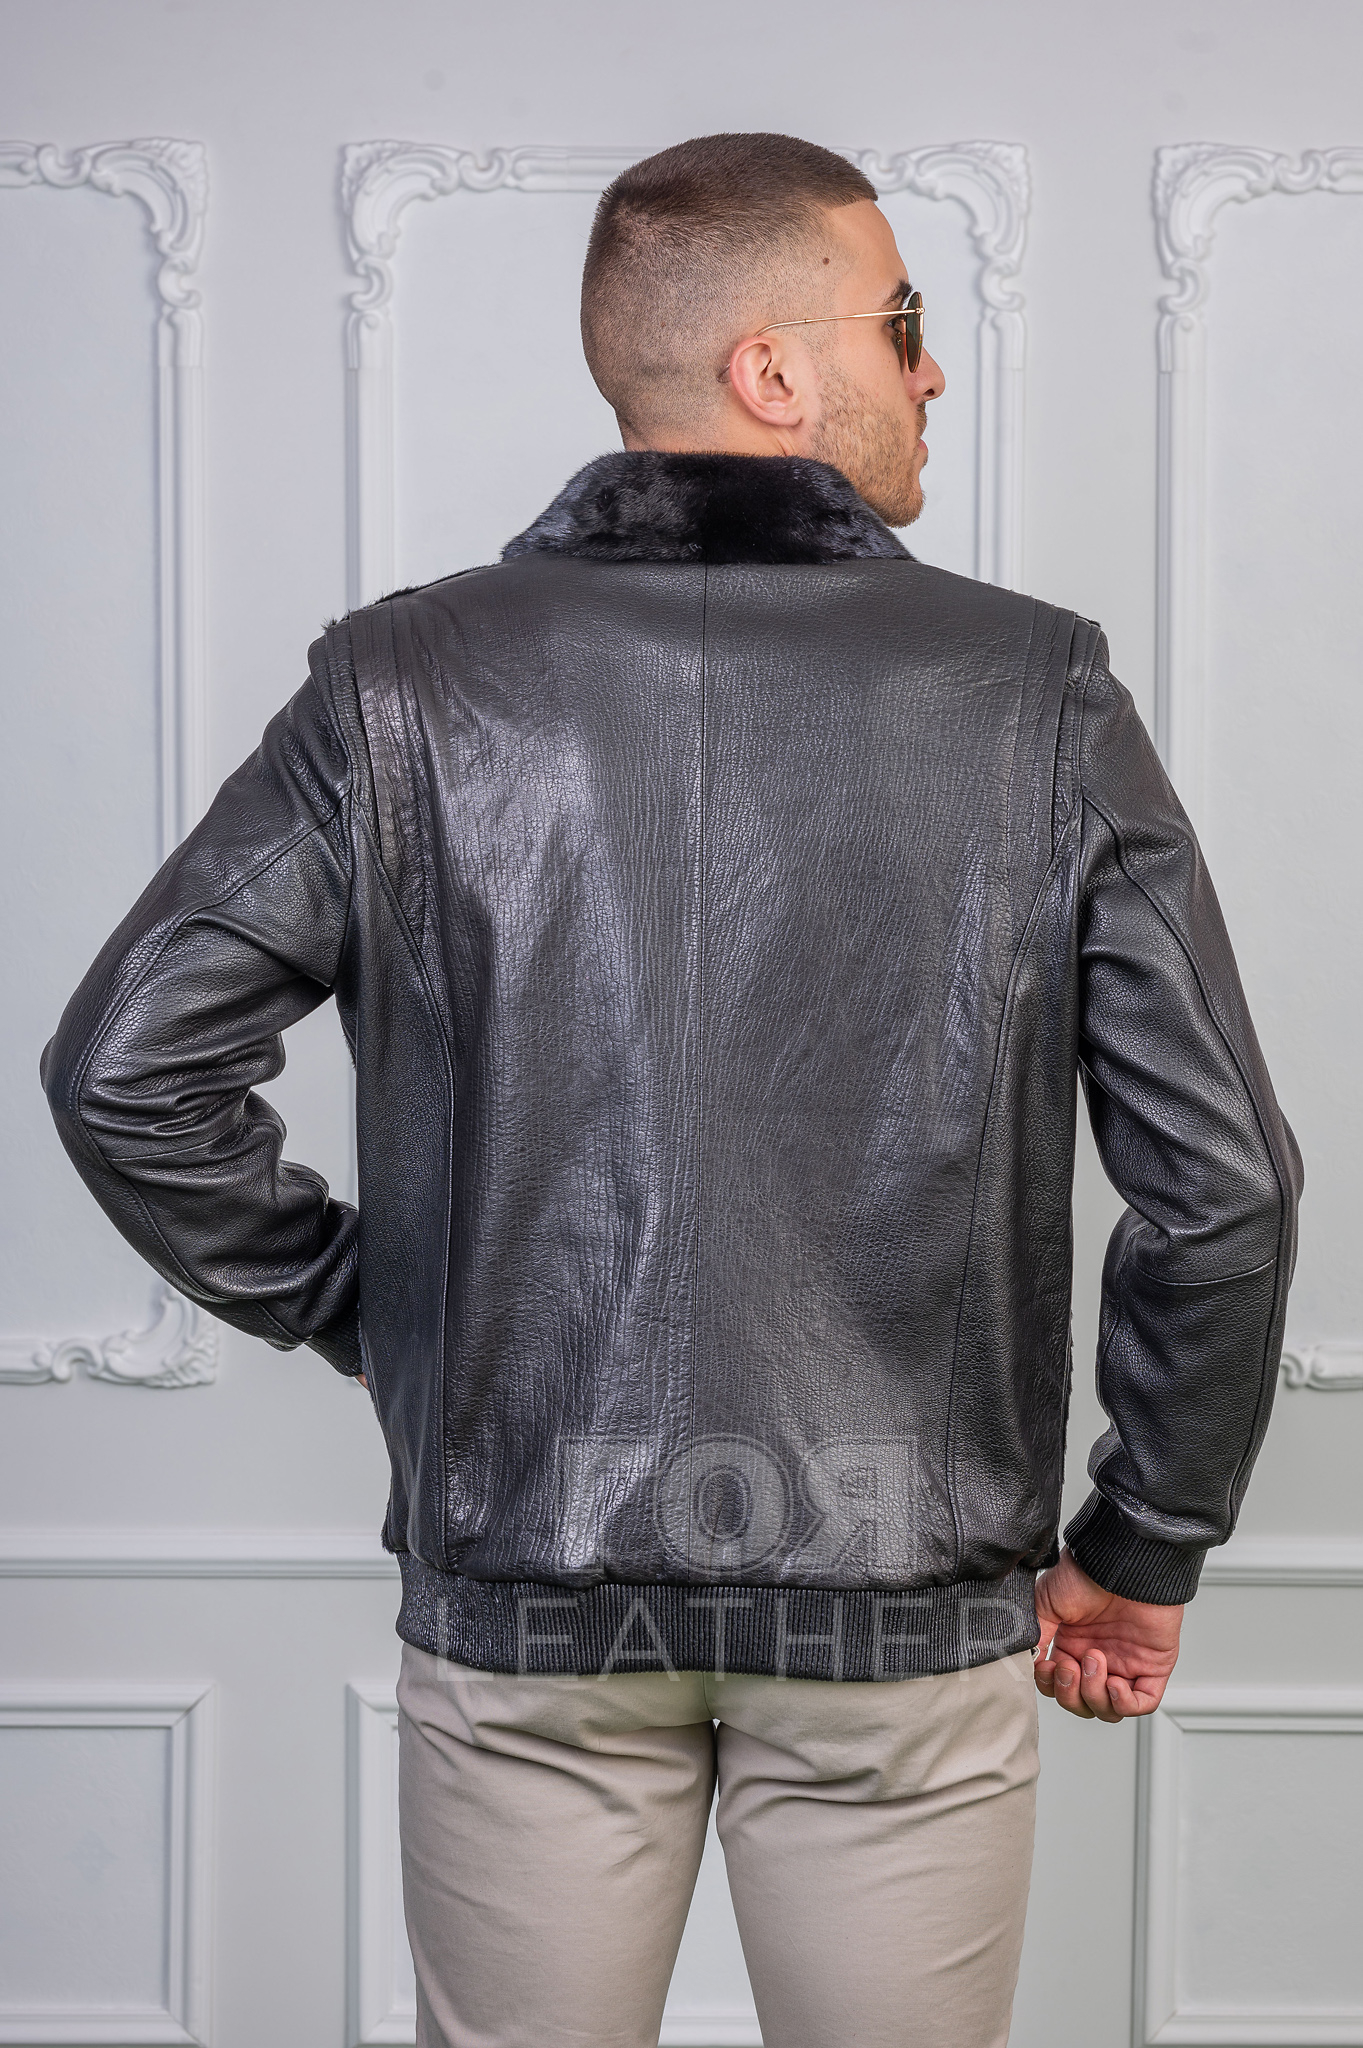 Мъжко екстравагантно кожено яке бомбър от ГОЯ Leather. Нов екстравагантен модел бомбър изработен от три вида качествена кожа. Нова луксозна колекция мъжки кожени якета 2022 г.